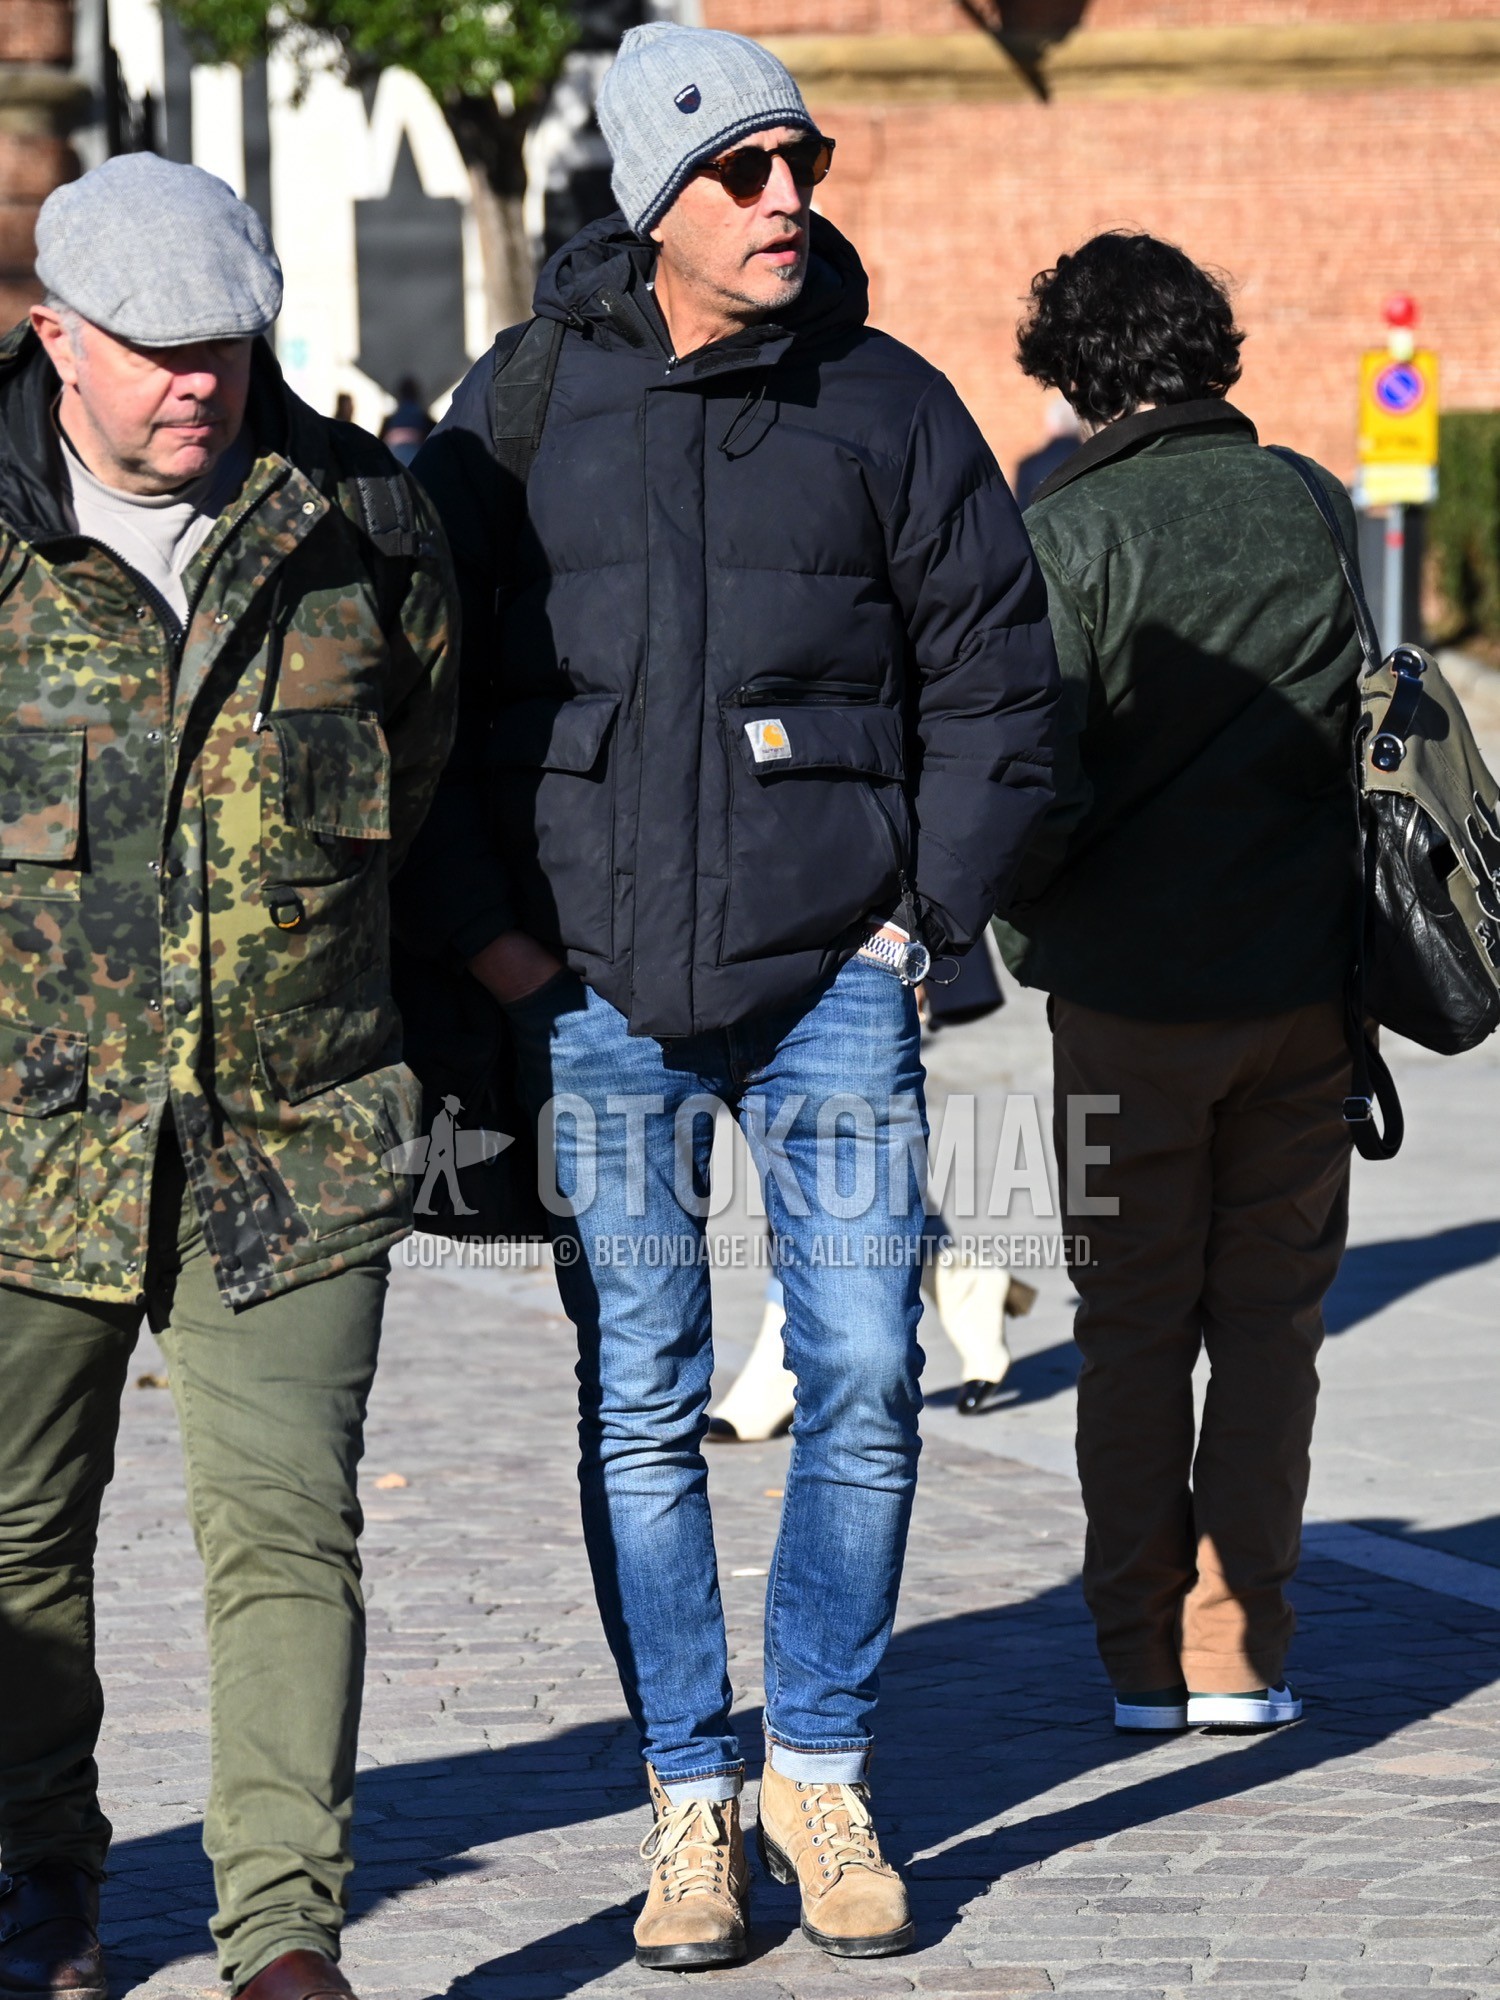 Men's autumn winter outfit with gray plain knit cap, brown tortoiseshell sunglasses, black plain down jacket, black plain hooded coat, blue plain denim/jeans, beige work boots.